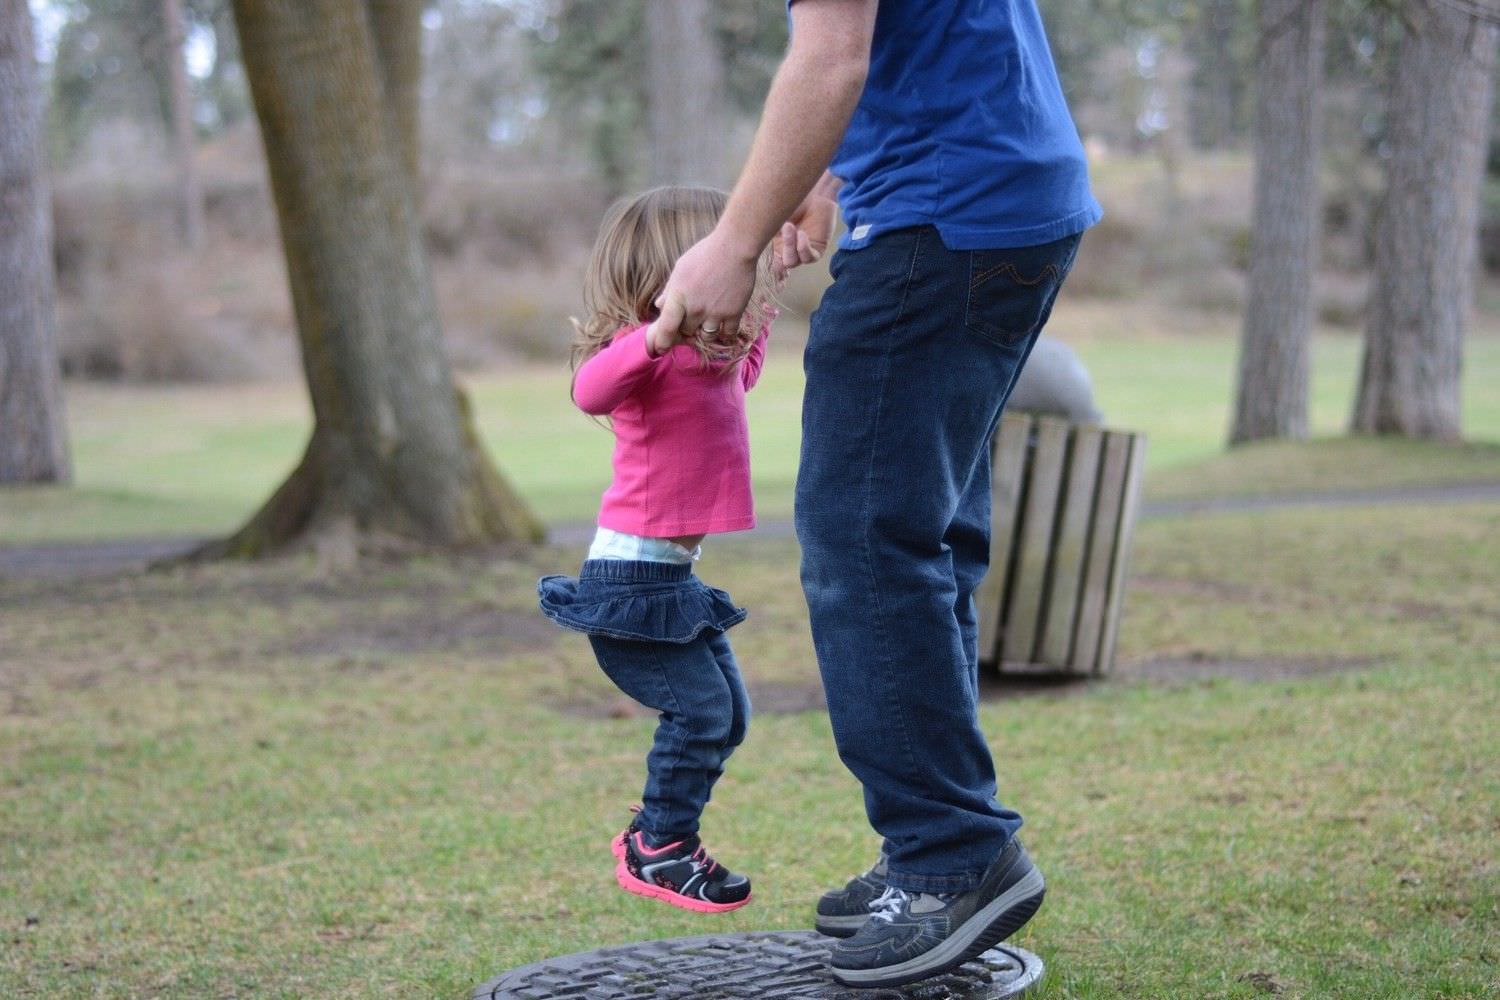 Bild zeigt: Vater mit kleiner Tochter auf dem Balancekissen im Park